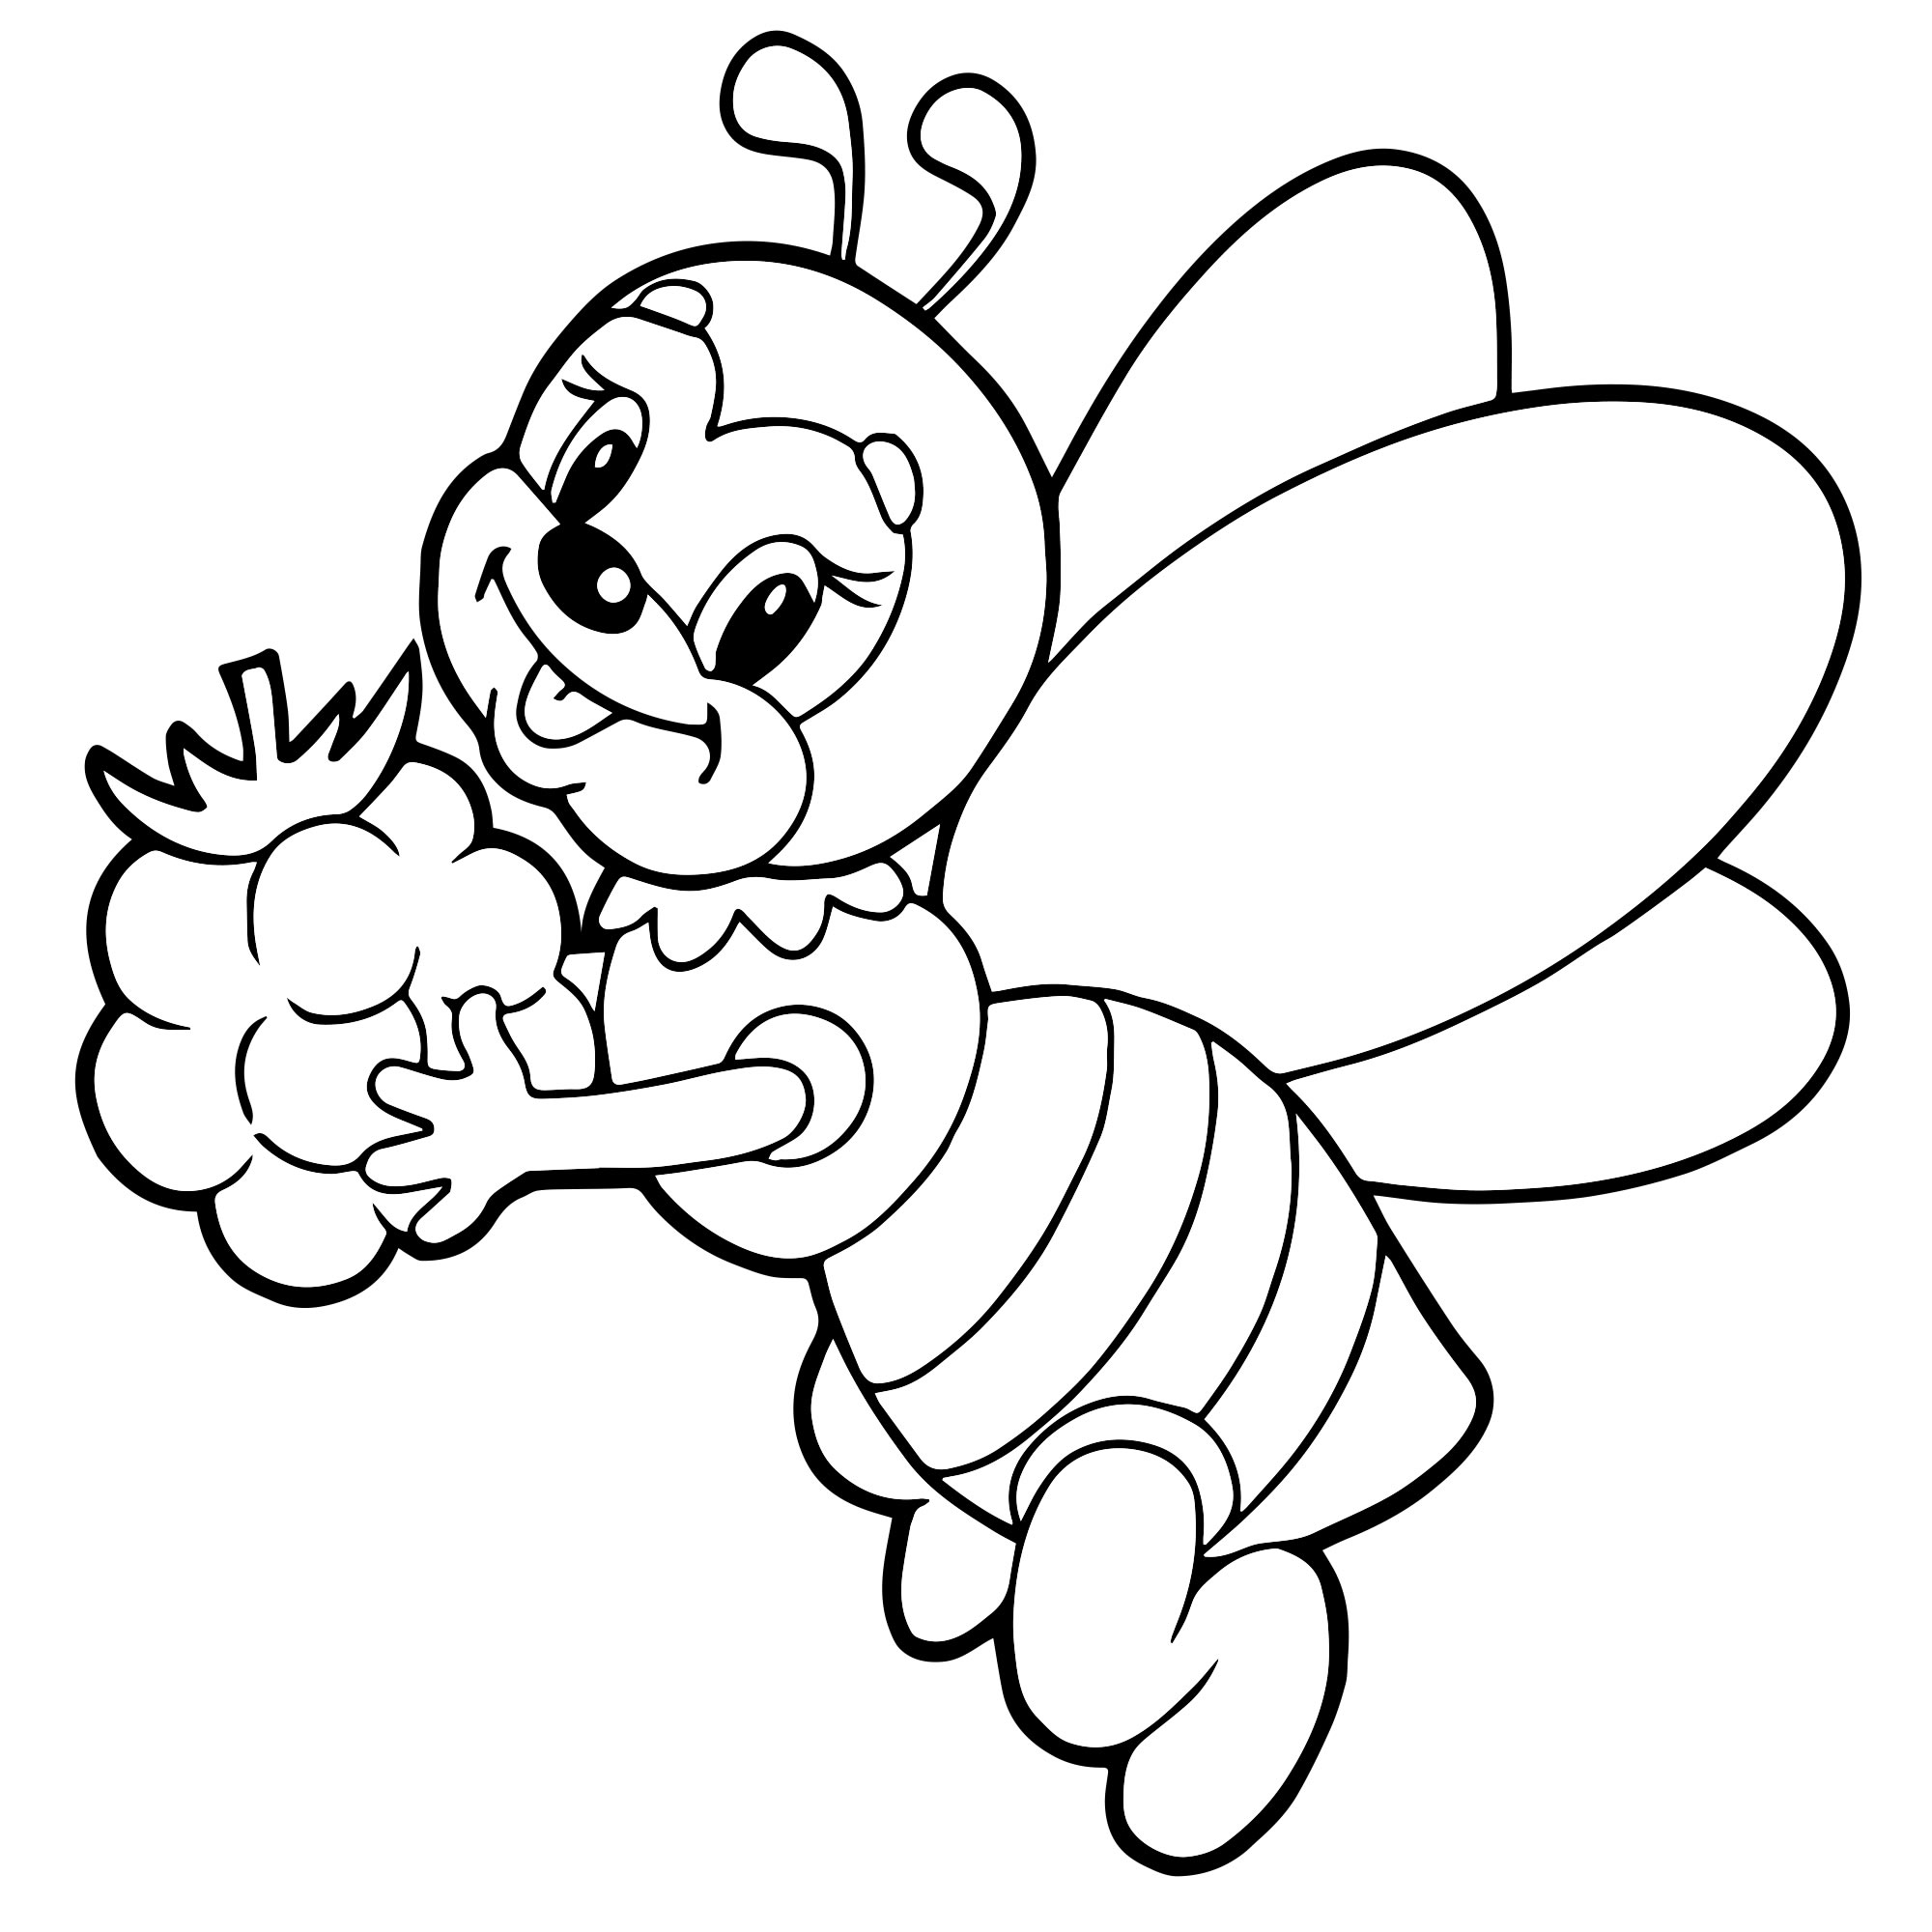 Картинки для детей распечатать. Пчела раскраска. Пчела раскраска для детей. Раскраска пчёлка для детей. Пчелка раскраска для малышей.